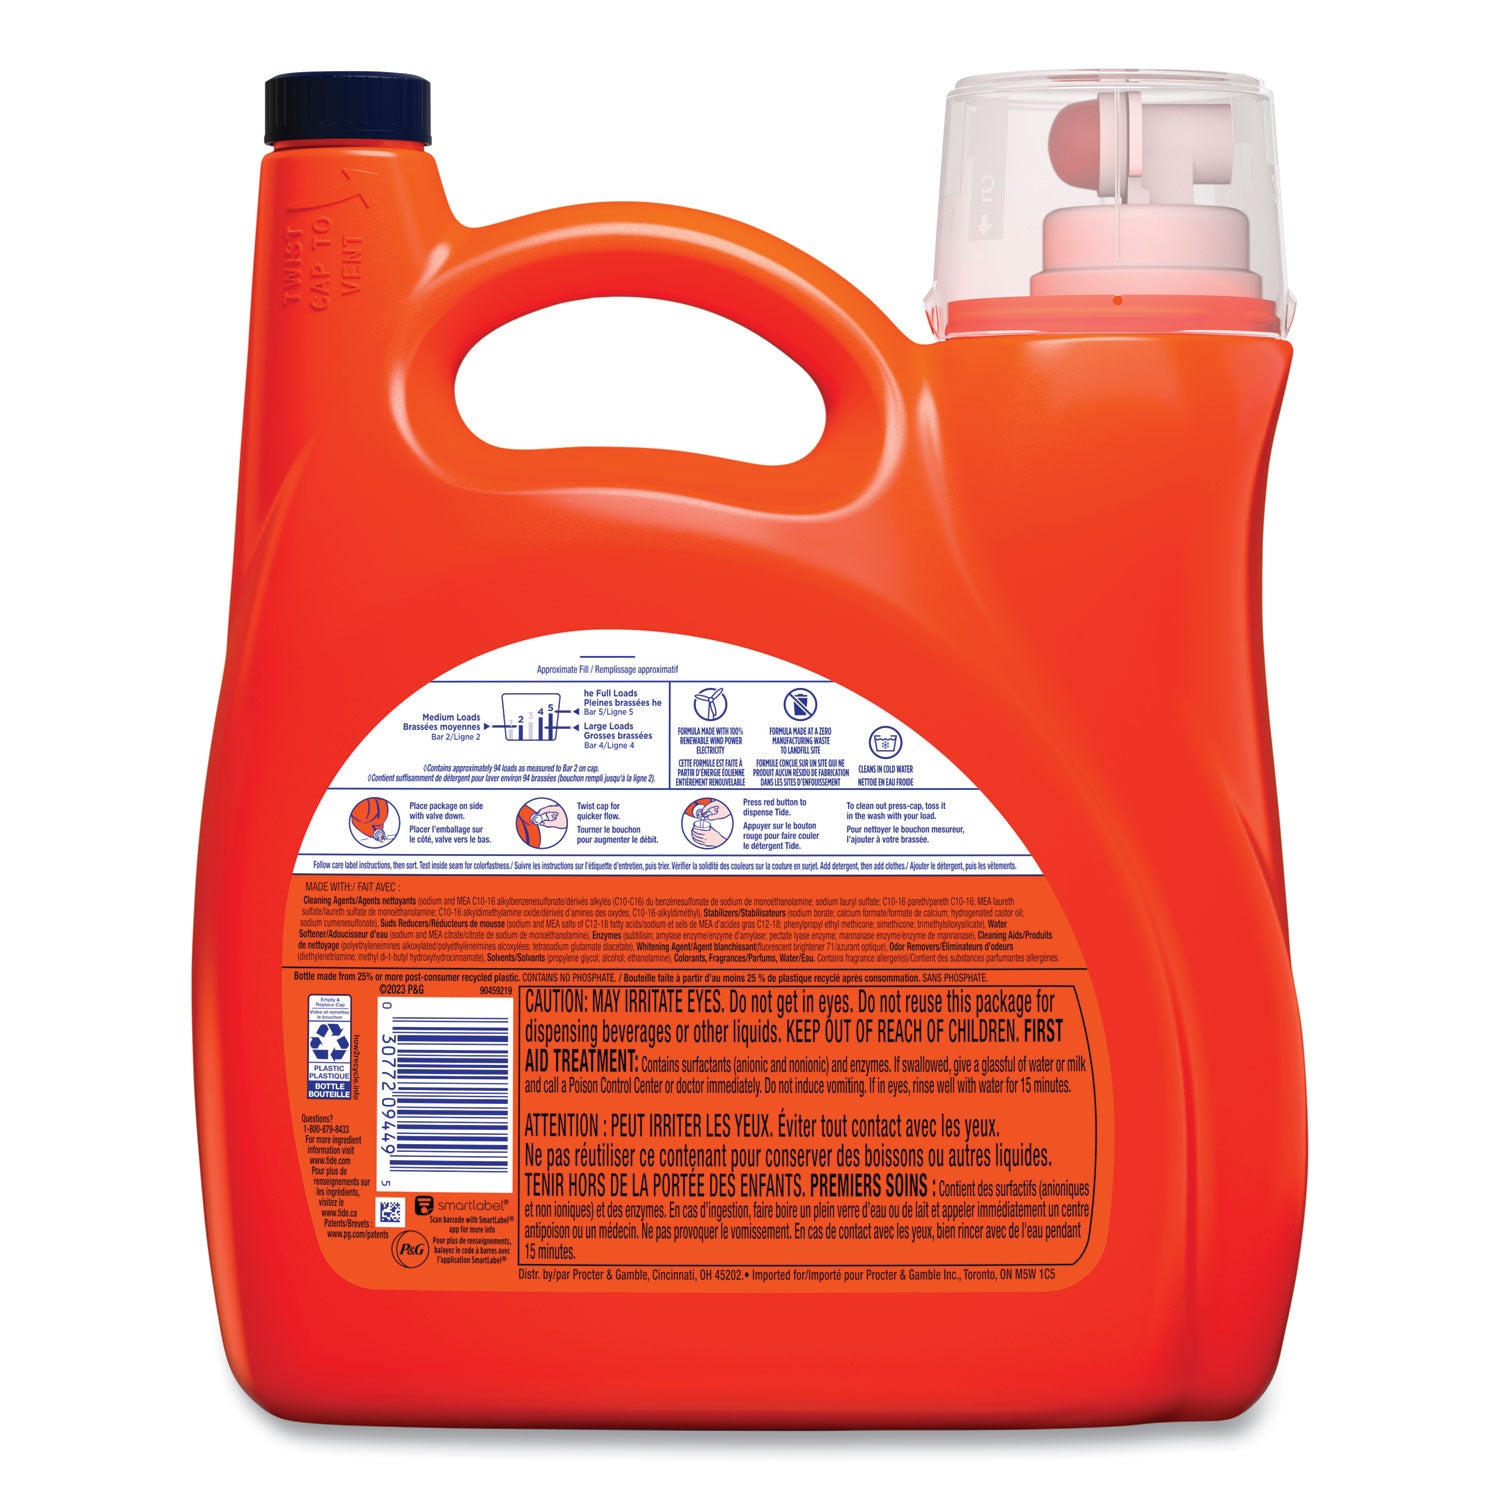 hygienic-clean-heavy-10x-duty-liquid-laundry-detergent-spring-meadow-scent-146-oz-pour-bottle-4-carton_pgc09449 - 2